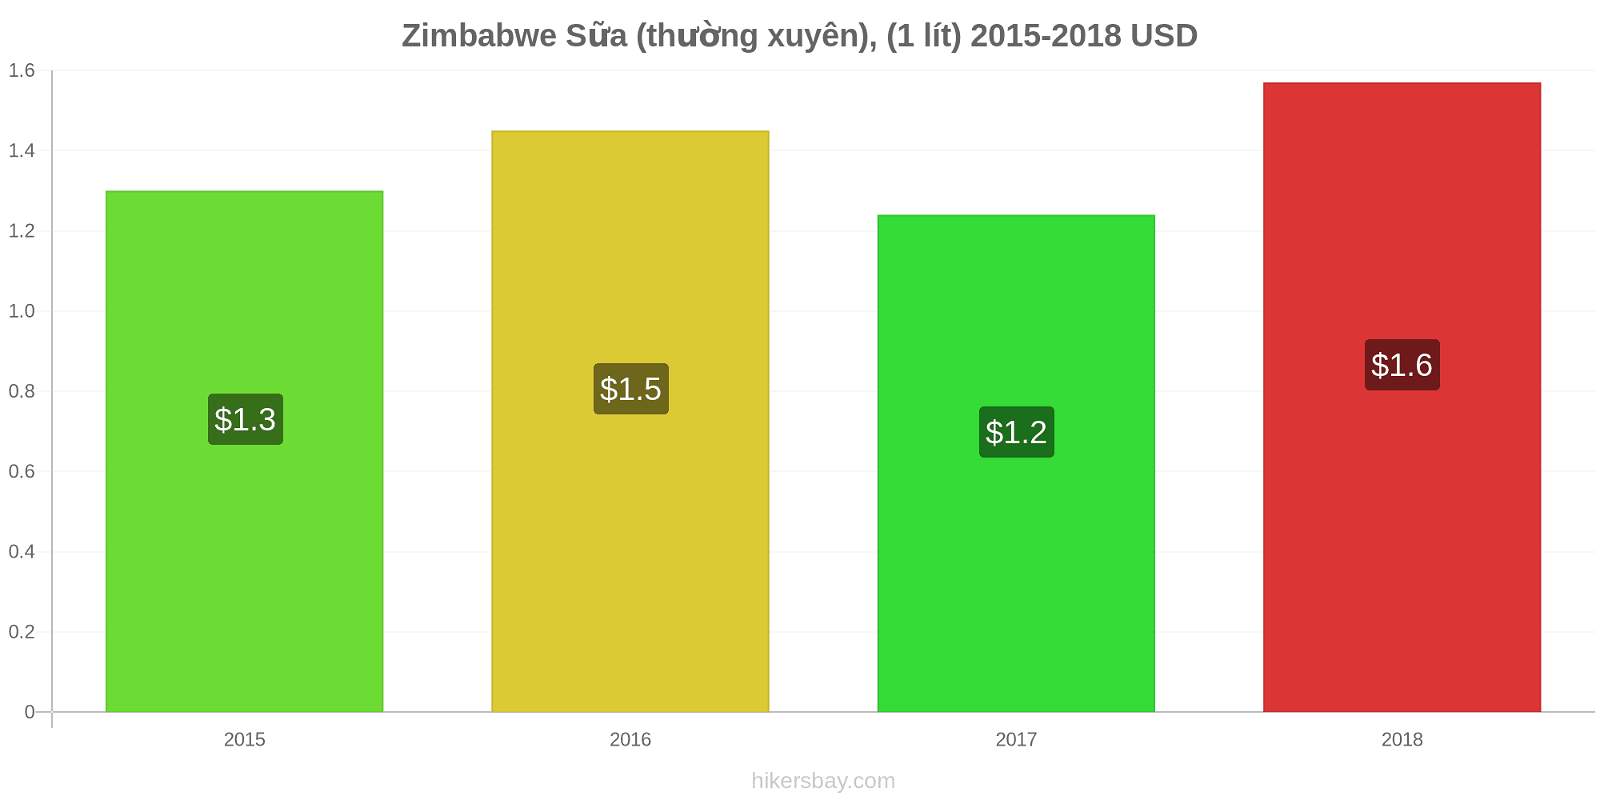 Zimbabwe thay đổi giá Sữa (thường xuyên), (1 lít) hikersbay.com